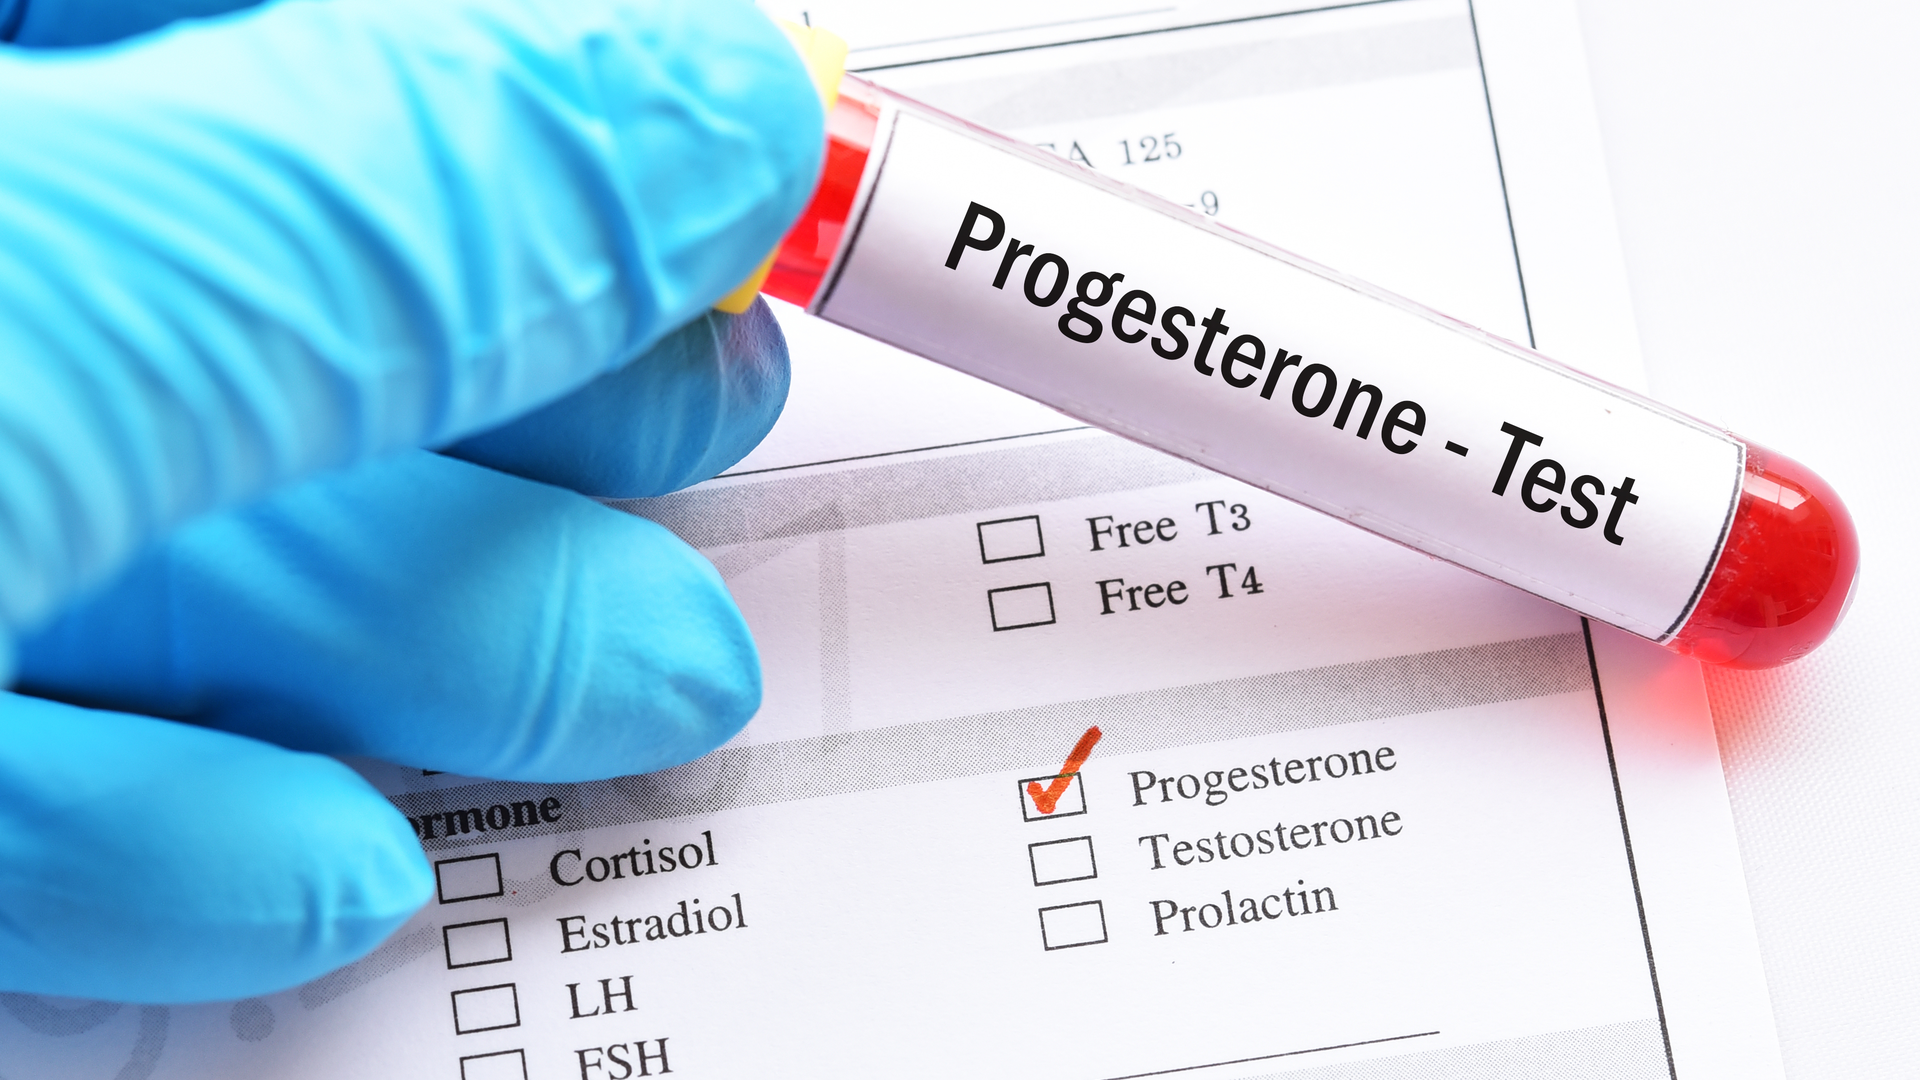 Totul despre progesteron: rol, valori, complicatii